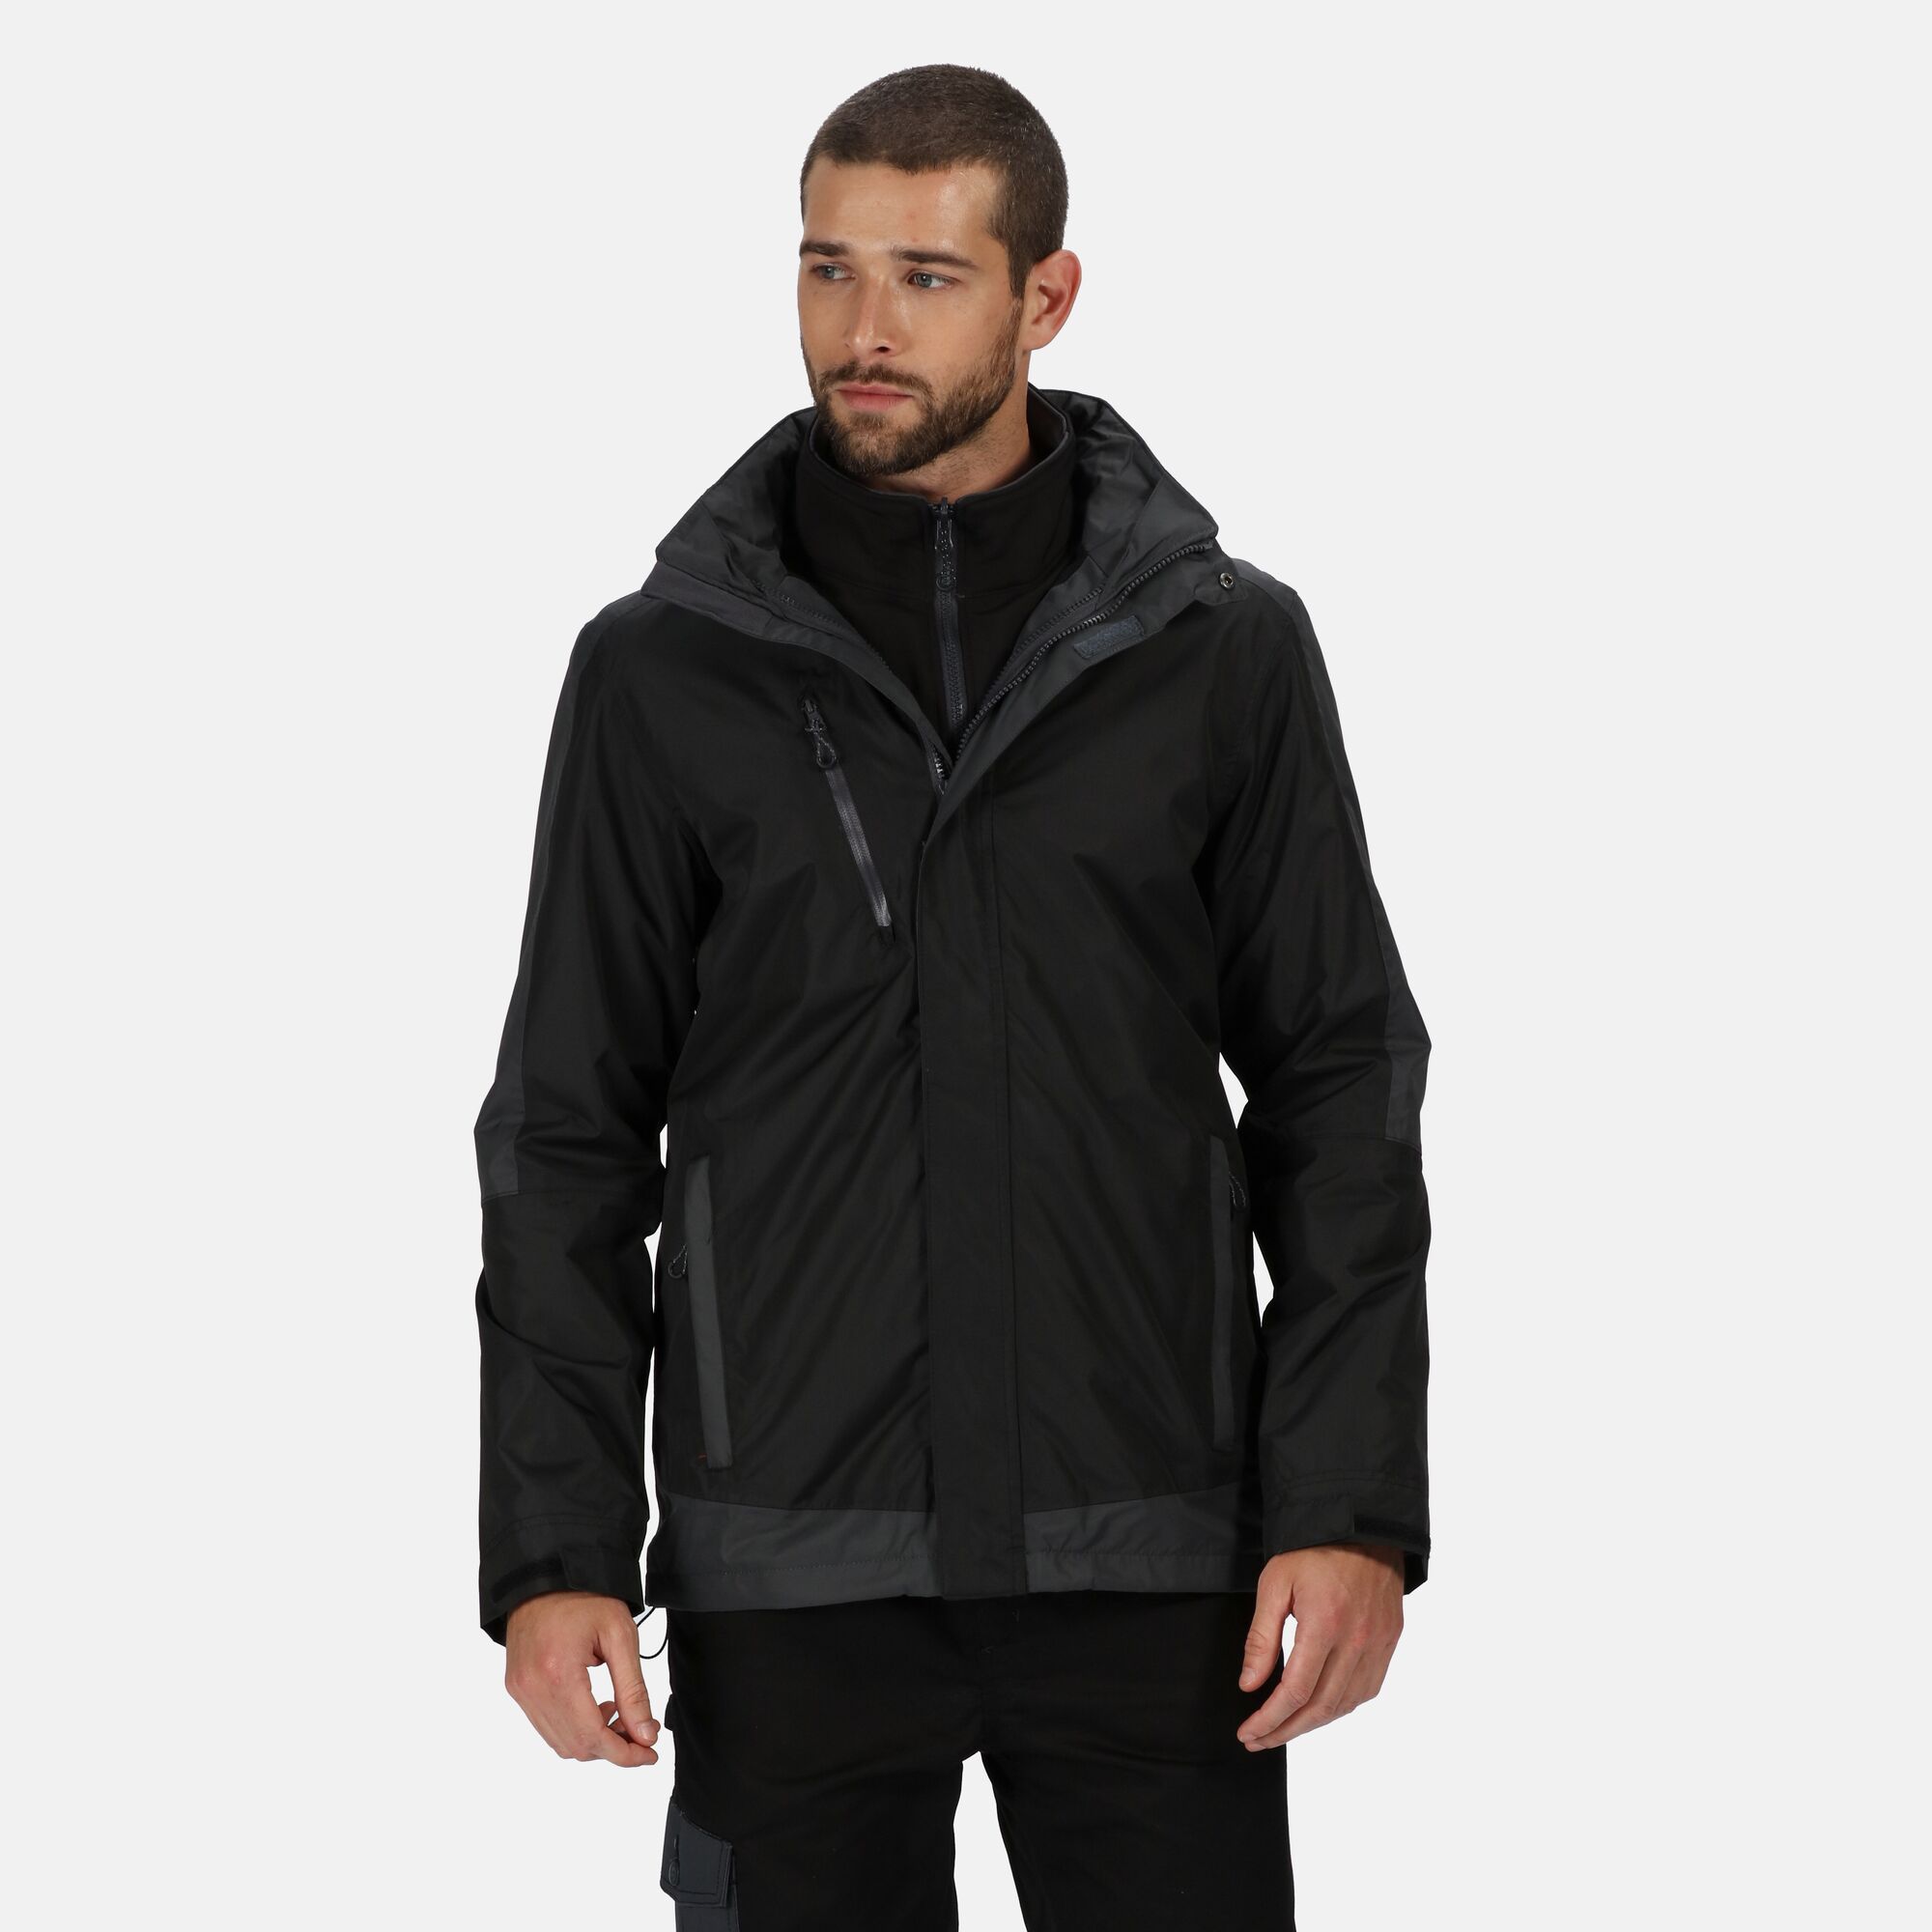 Regatta Professional Contrast Mens 3-in-1 Waterproof Jacket | eBay